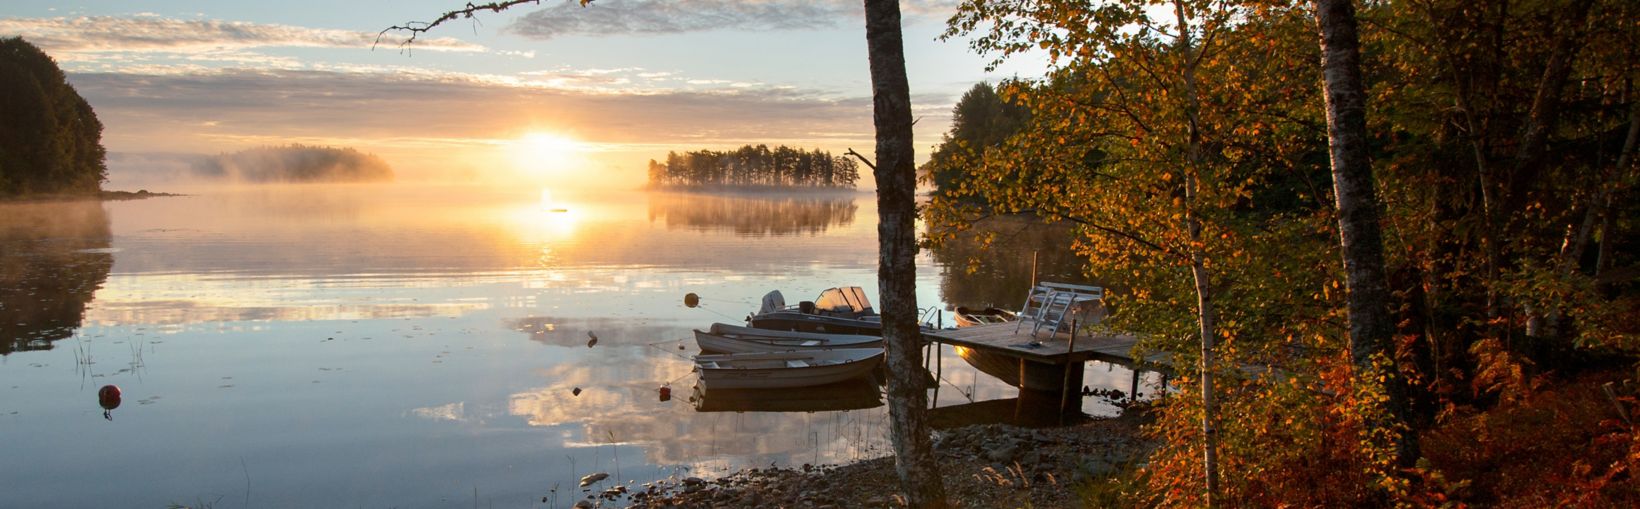 Udsigt over sø i Småland, Sverige